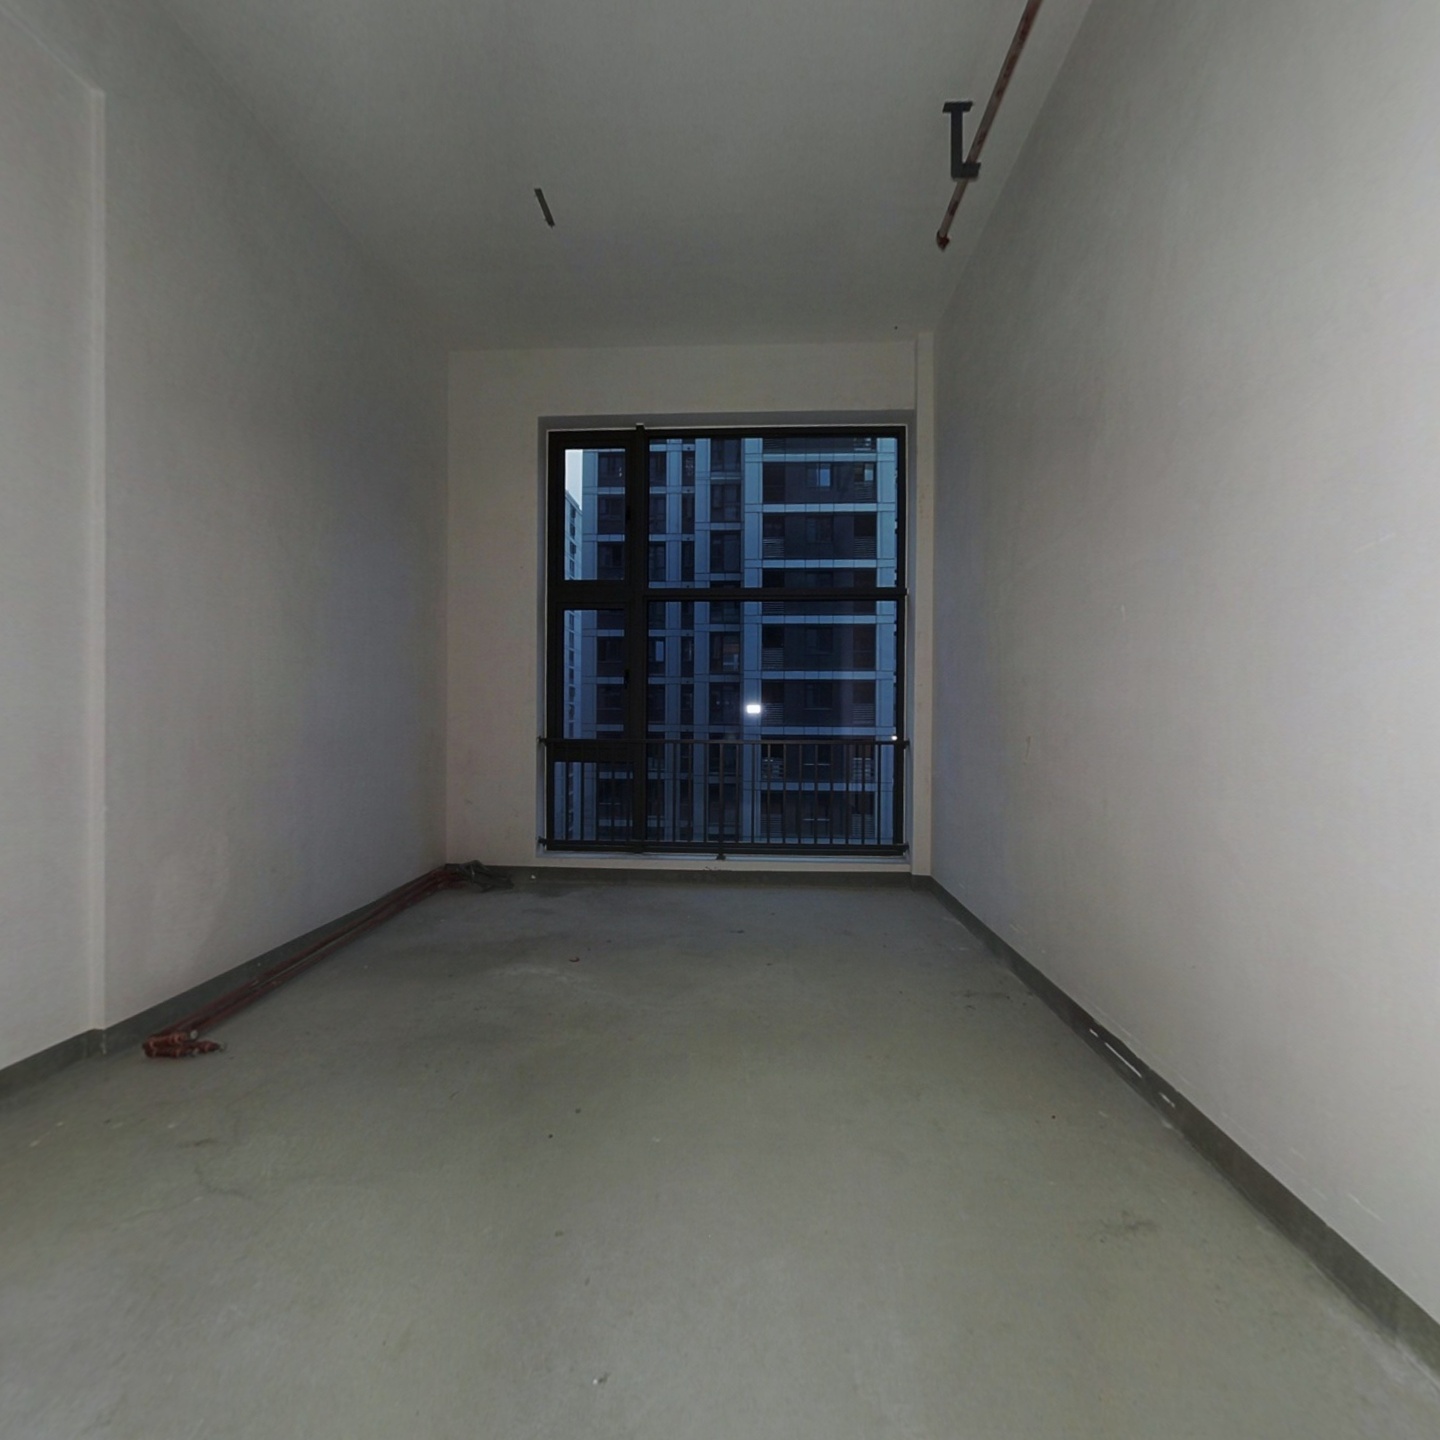 瓯海区府旁唯一公寓 4.2米层高 得房率超